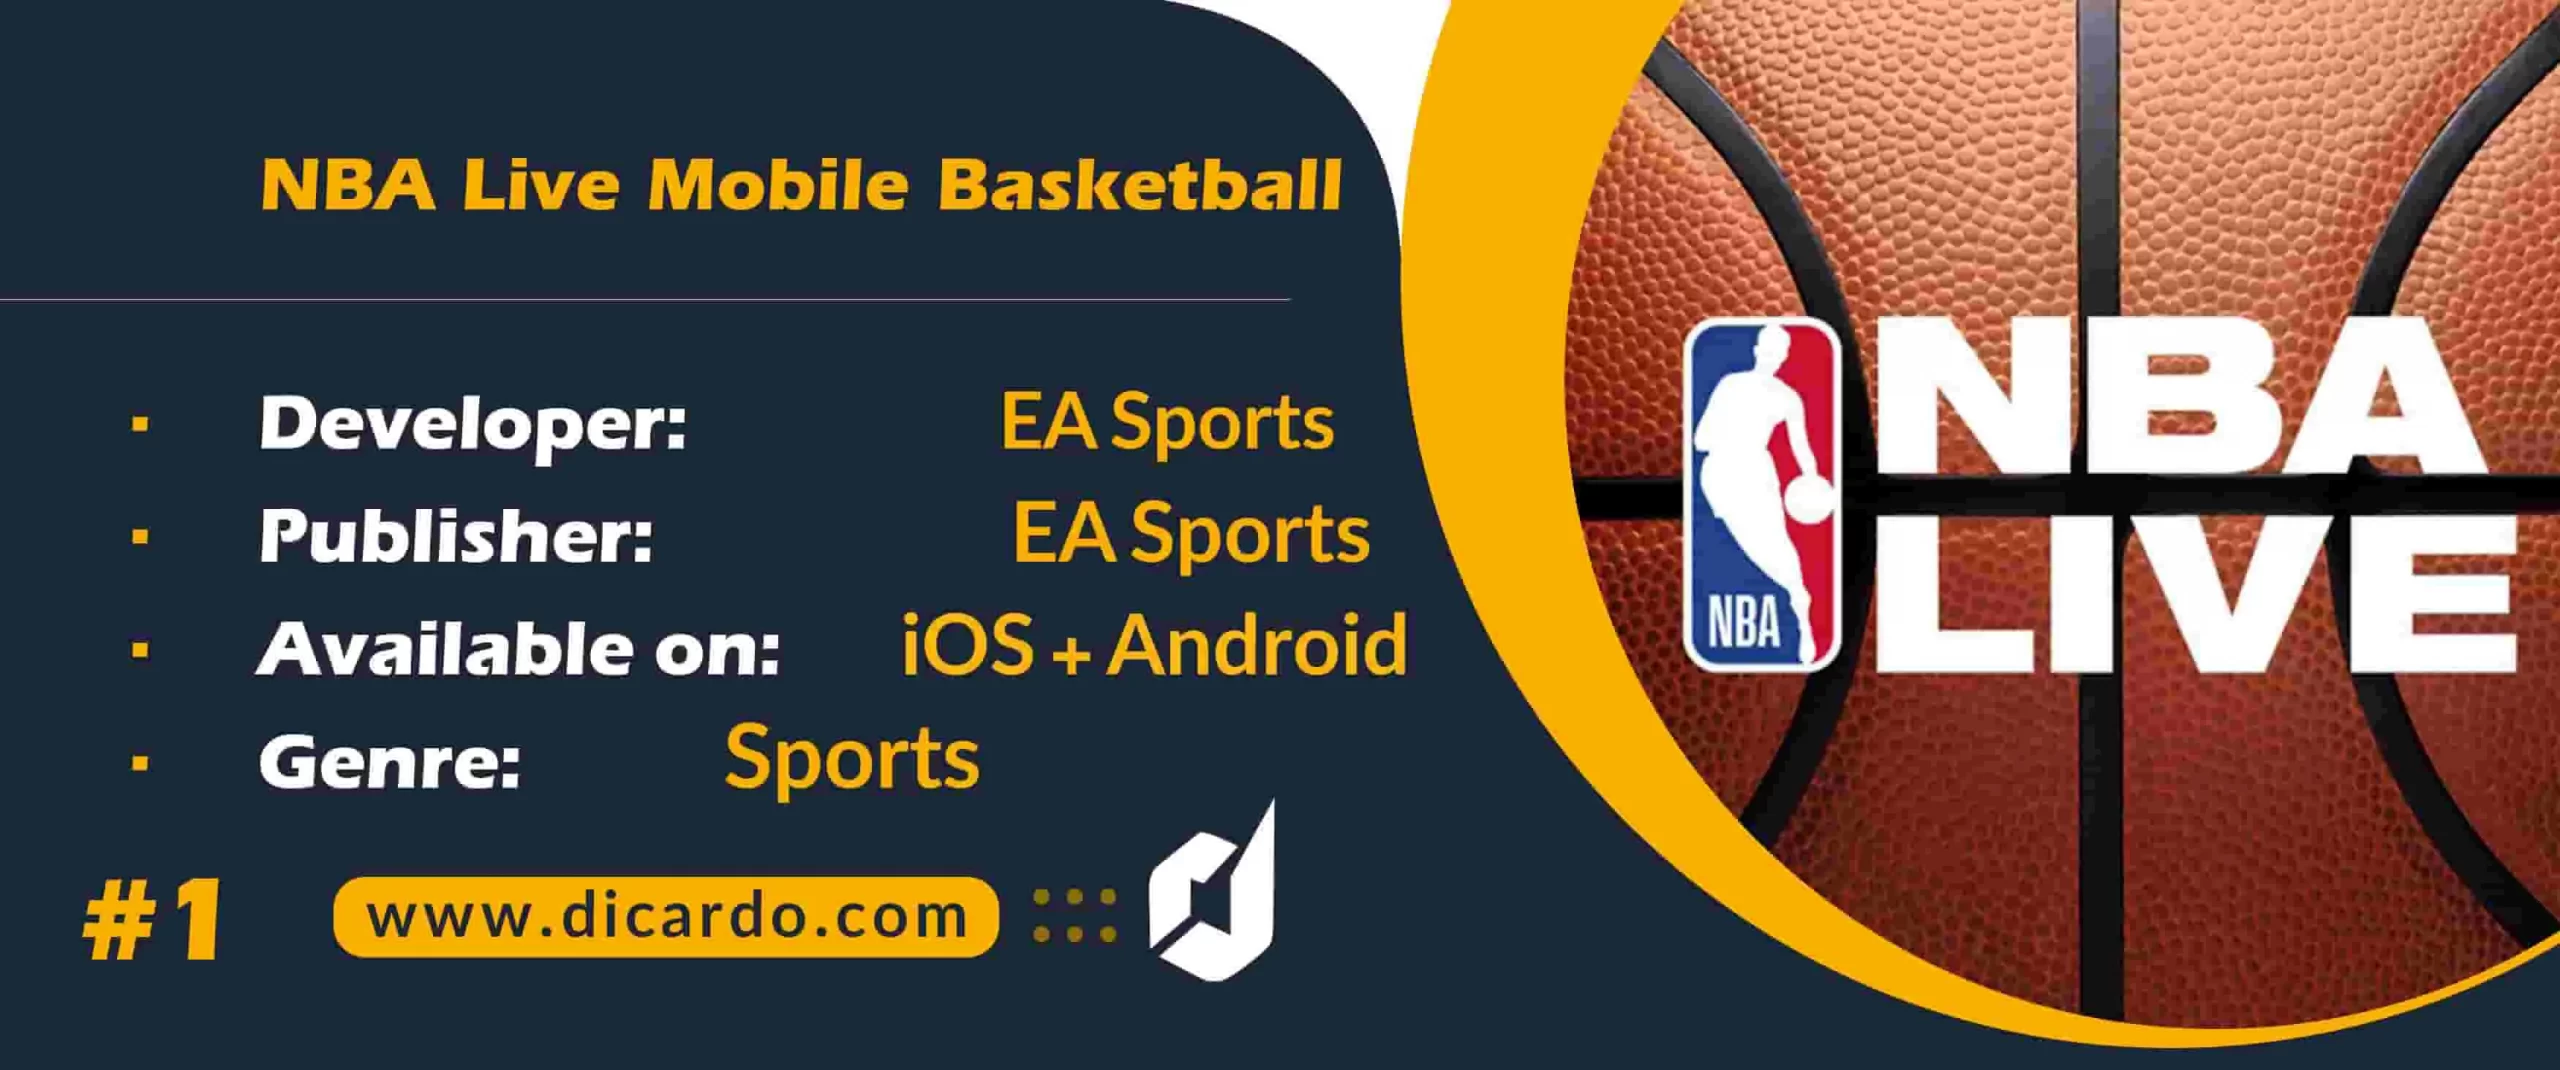 #1 ان بی ای لایو موبایل بسکتبال NBA Live Mobile Basketball رتبه اول لیست بهترین بازیهای بسکتبال